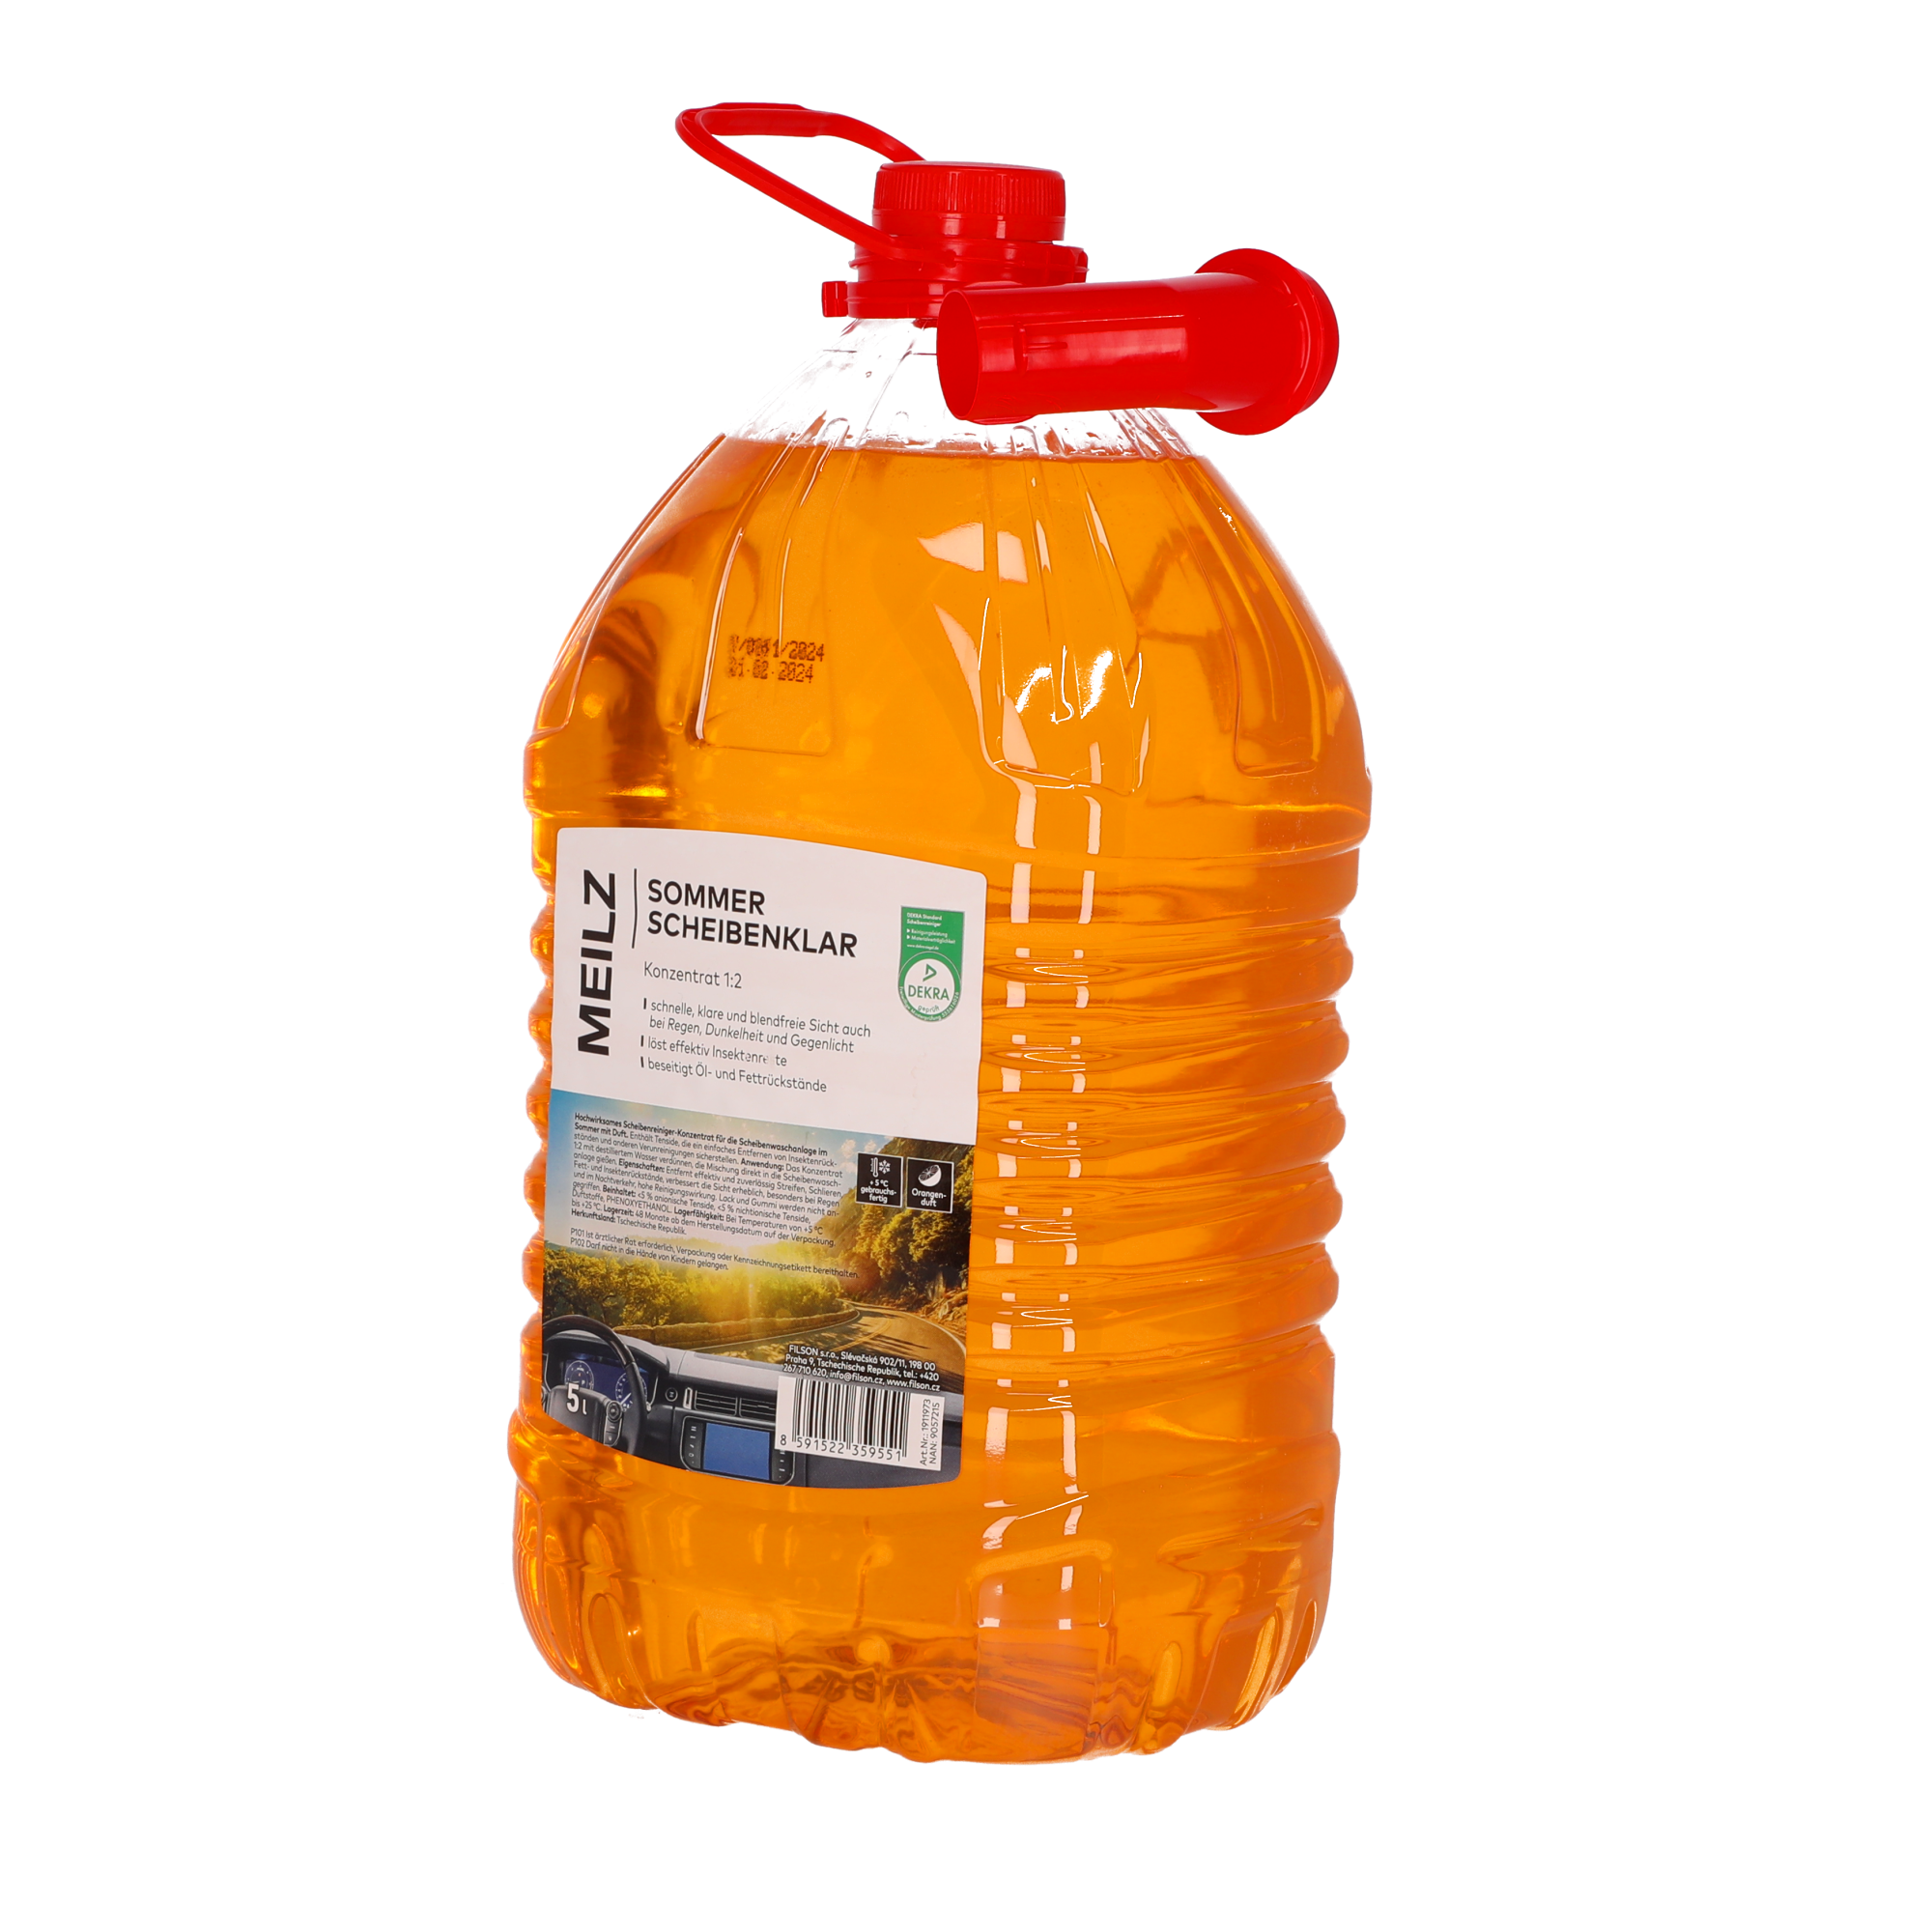 Scheibenklar 'Sommer' Orangenduft 5 l + product picture